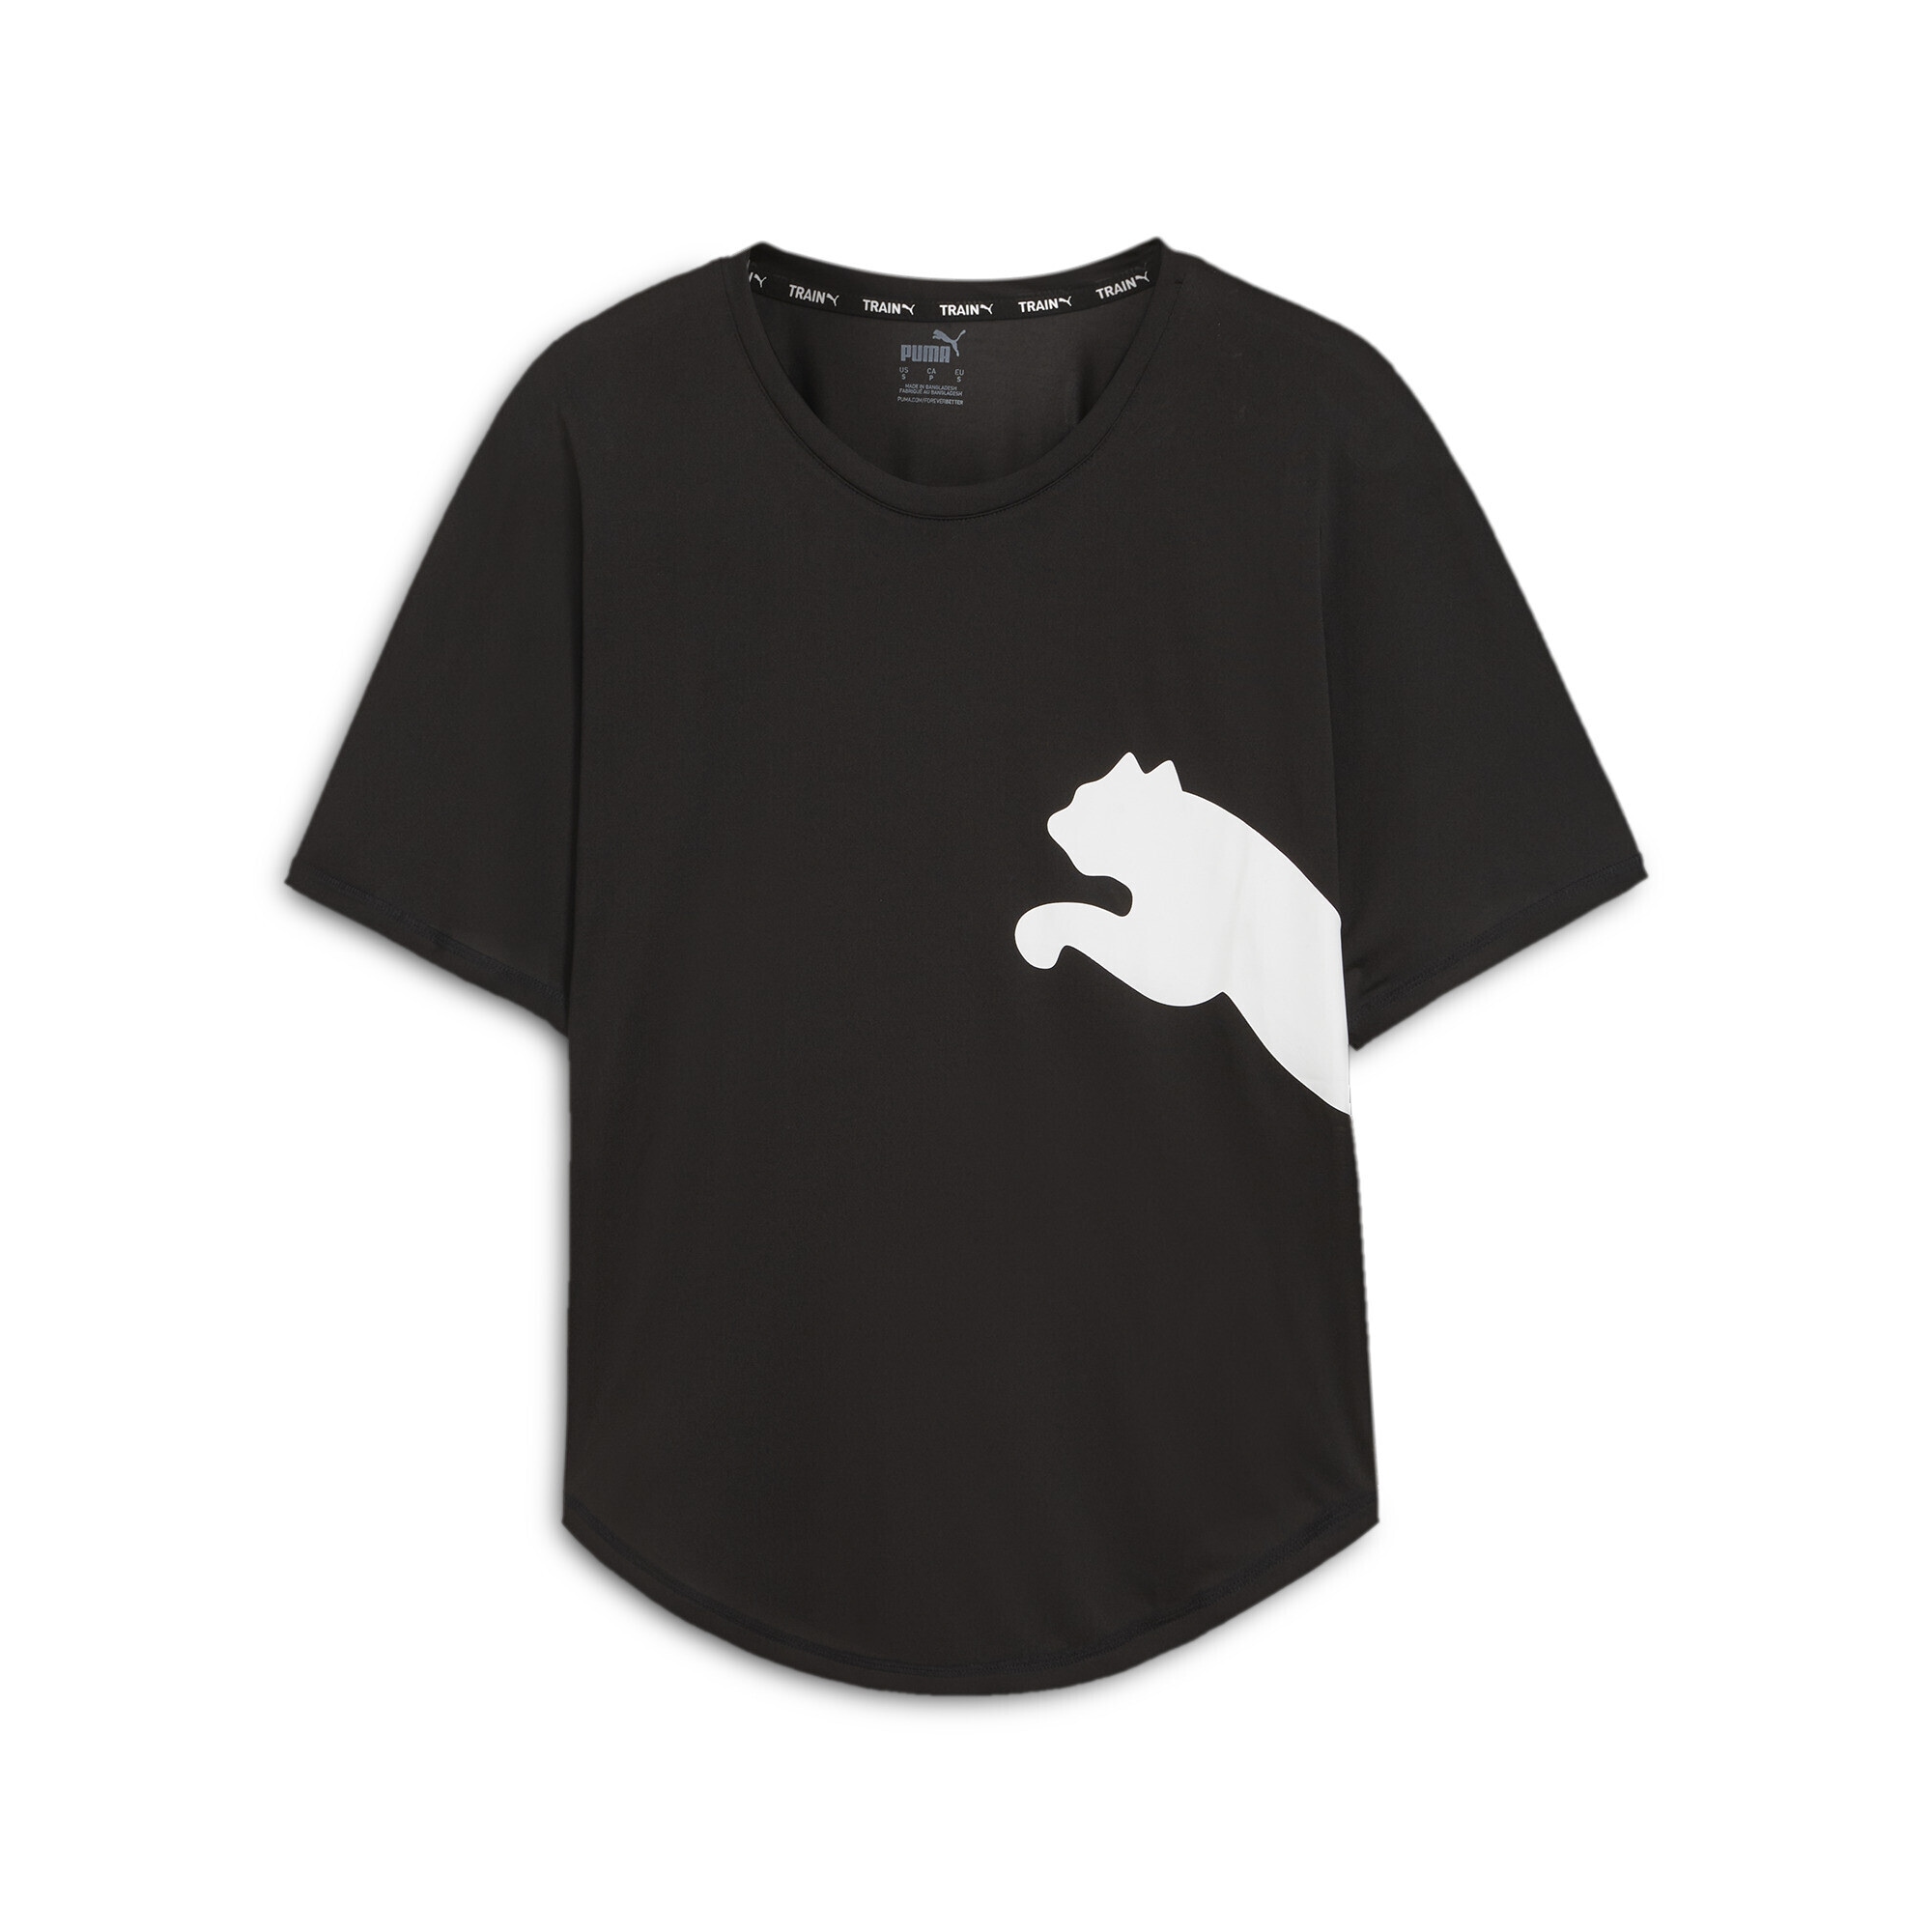 PUMA Trainingsshirt »Train All Day Big Cat T-Shirt Damen« kaufen | I'm  walking